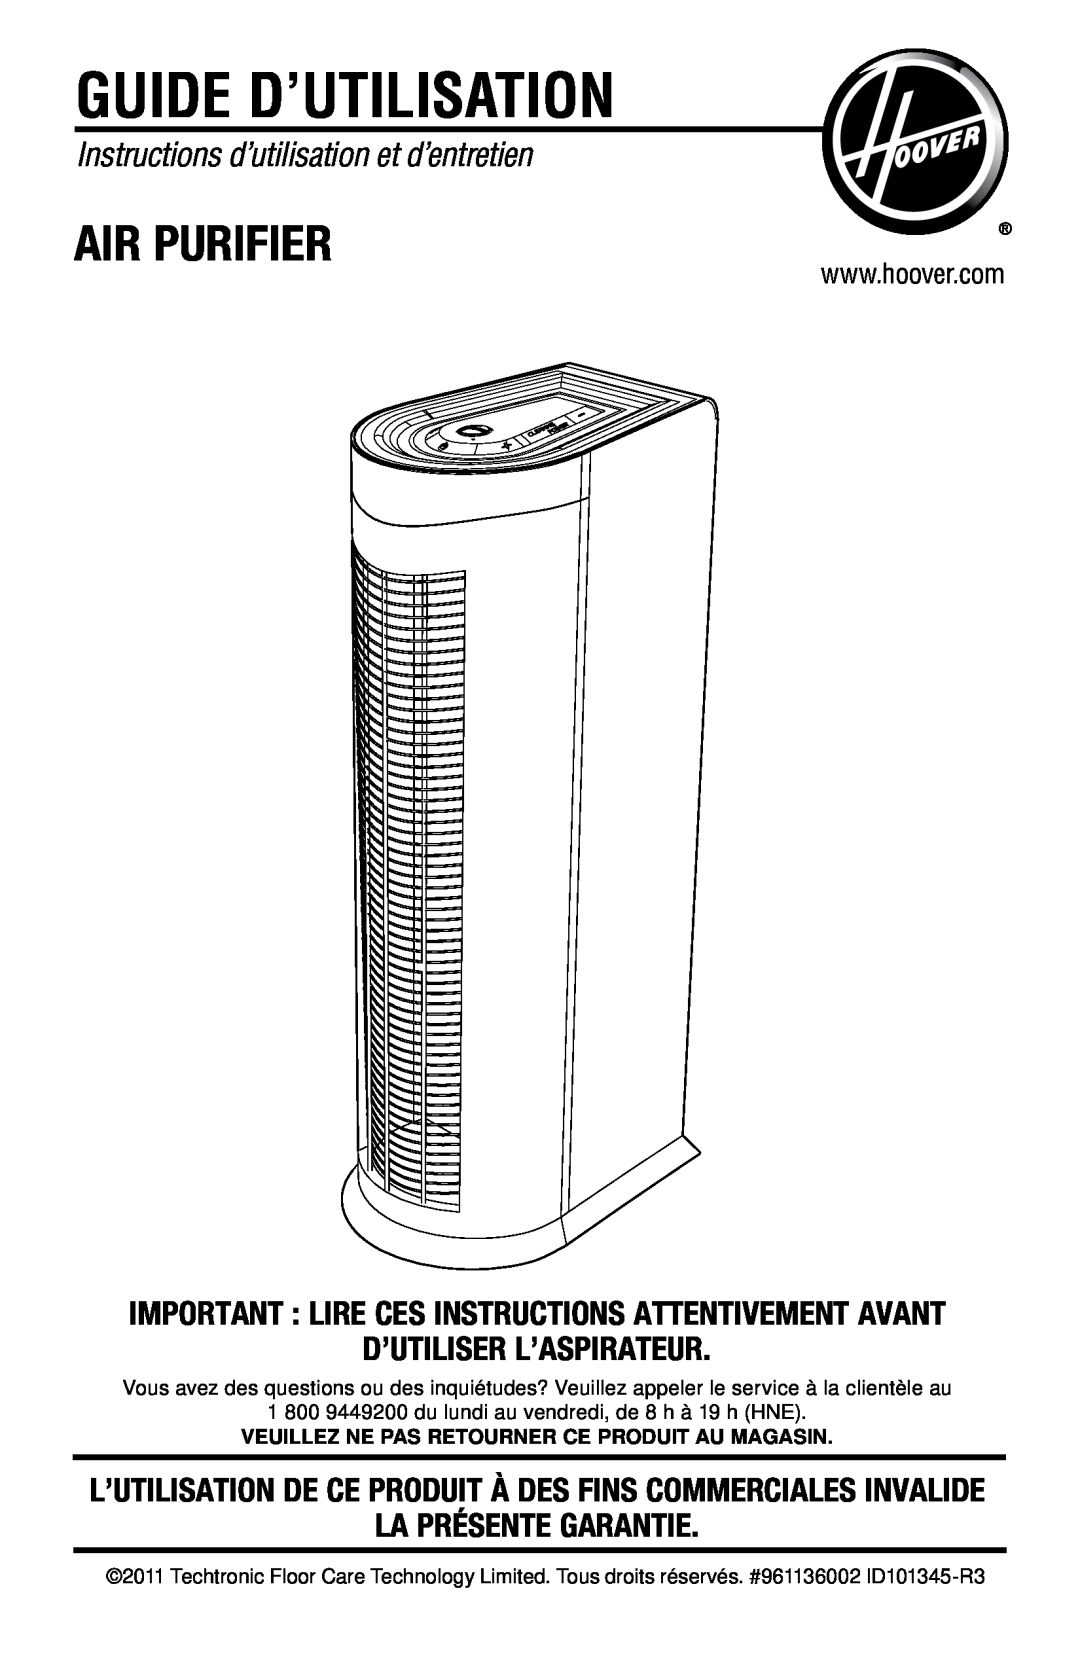 Hoover Air Cleaner Guide d’utilisation, Instructions d’utilisation et d’entretien, D’Utiliser L’Aspirateur, Air Purifier 